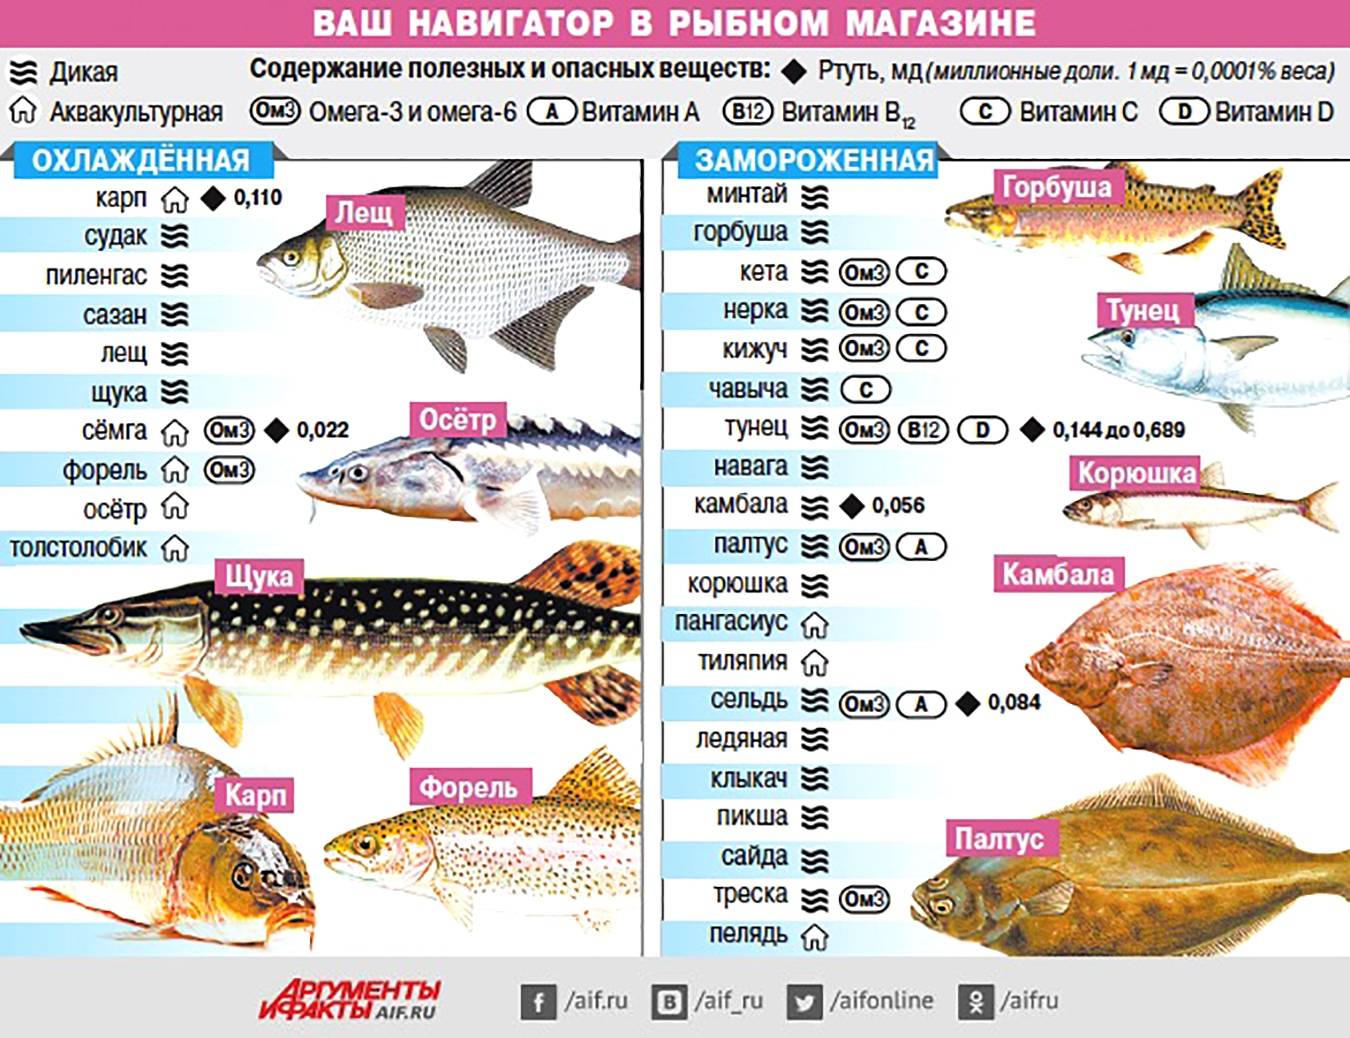 Щука калории. Самые популярные сорта рыбы. Самые полезные сорта рыбы. Содержание витаминов в рыбе. Таблица полезной рыбы.